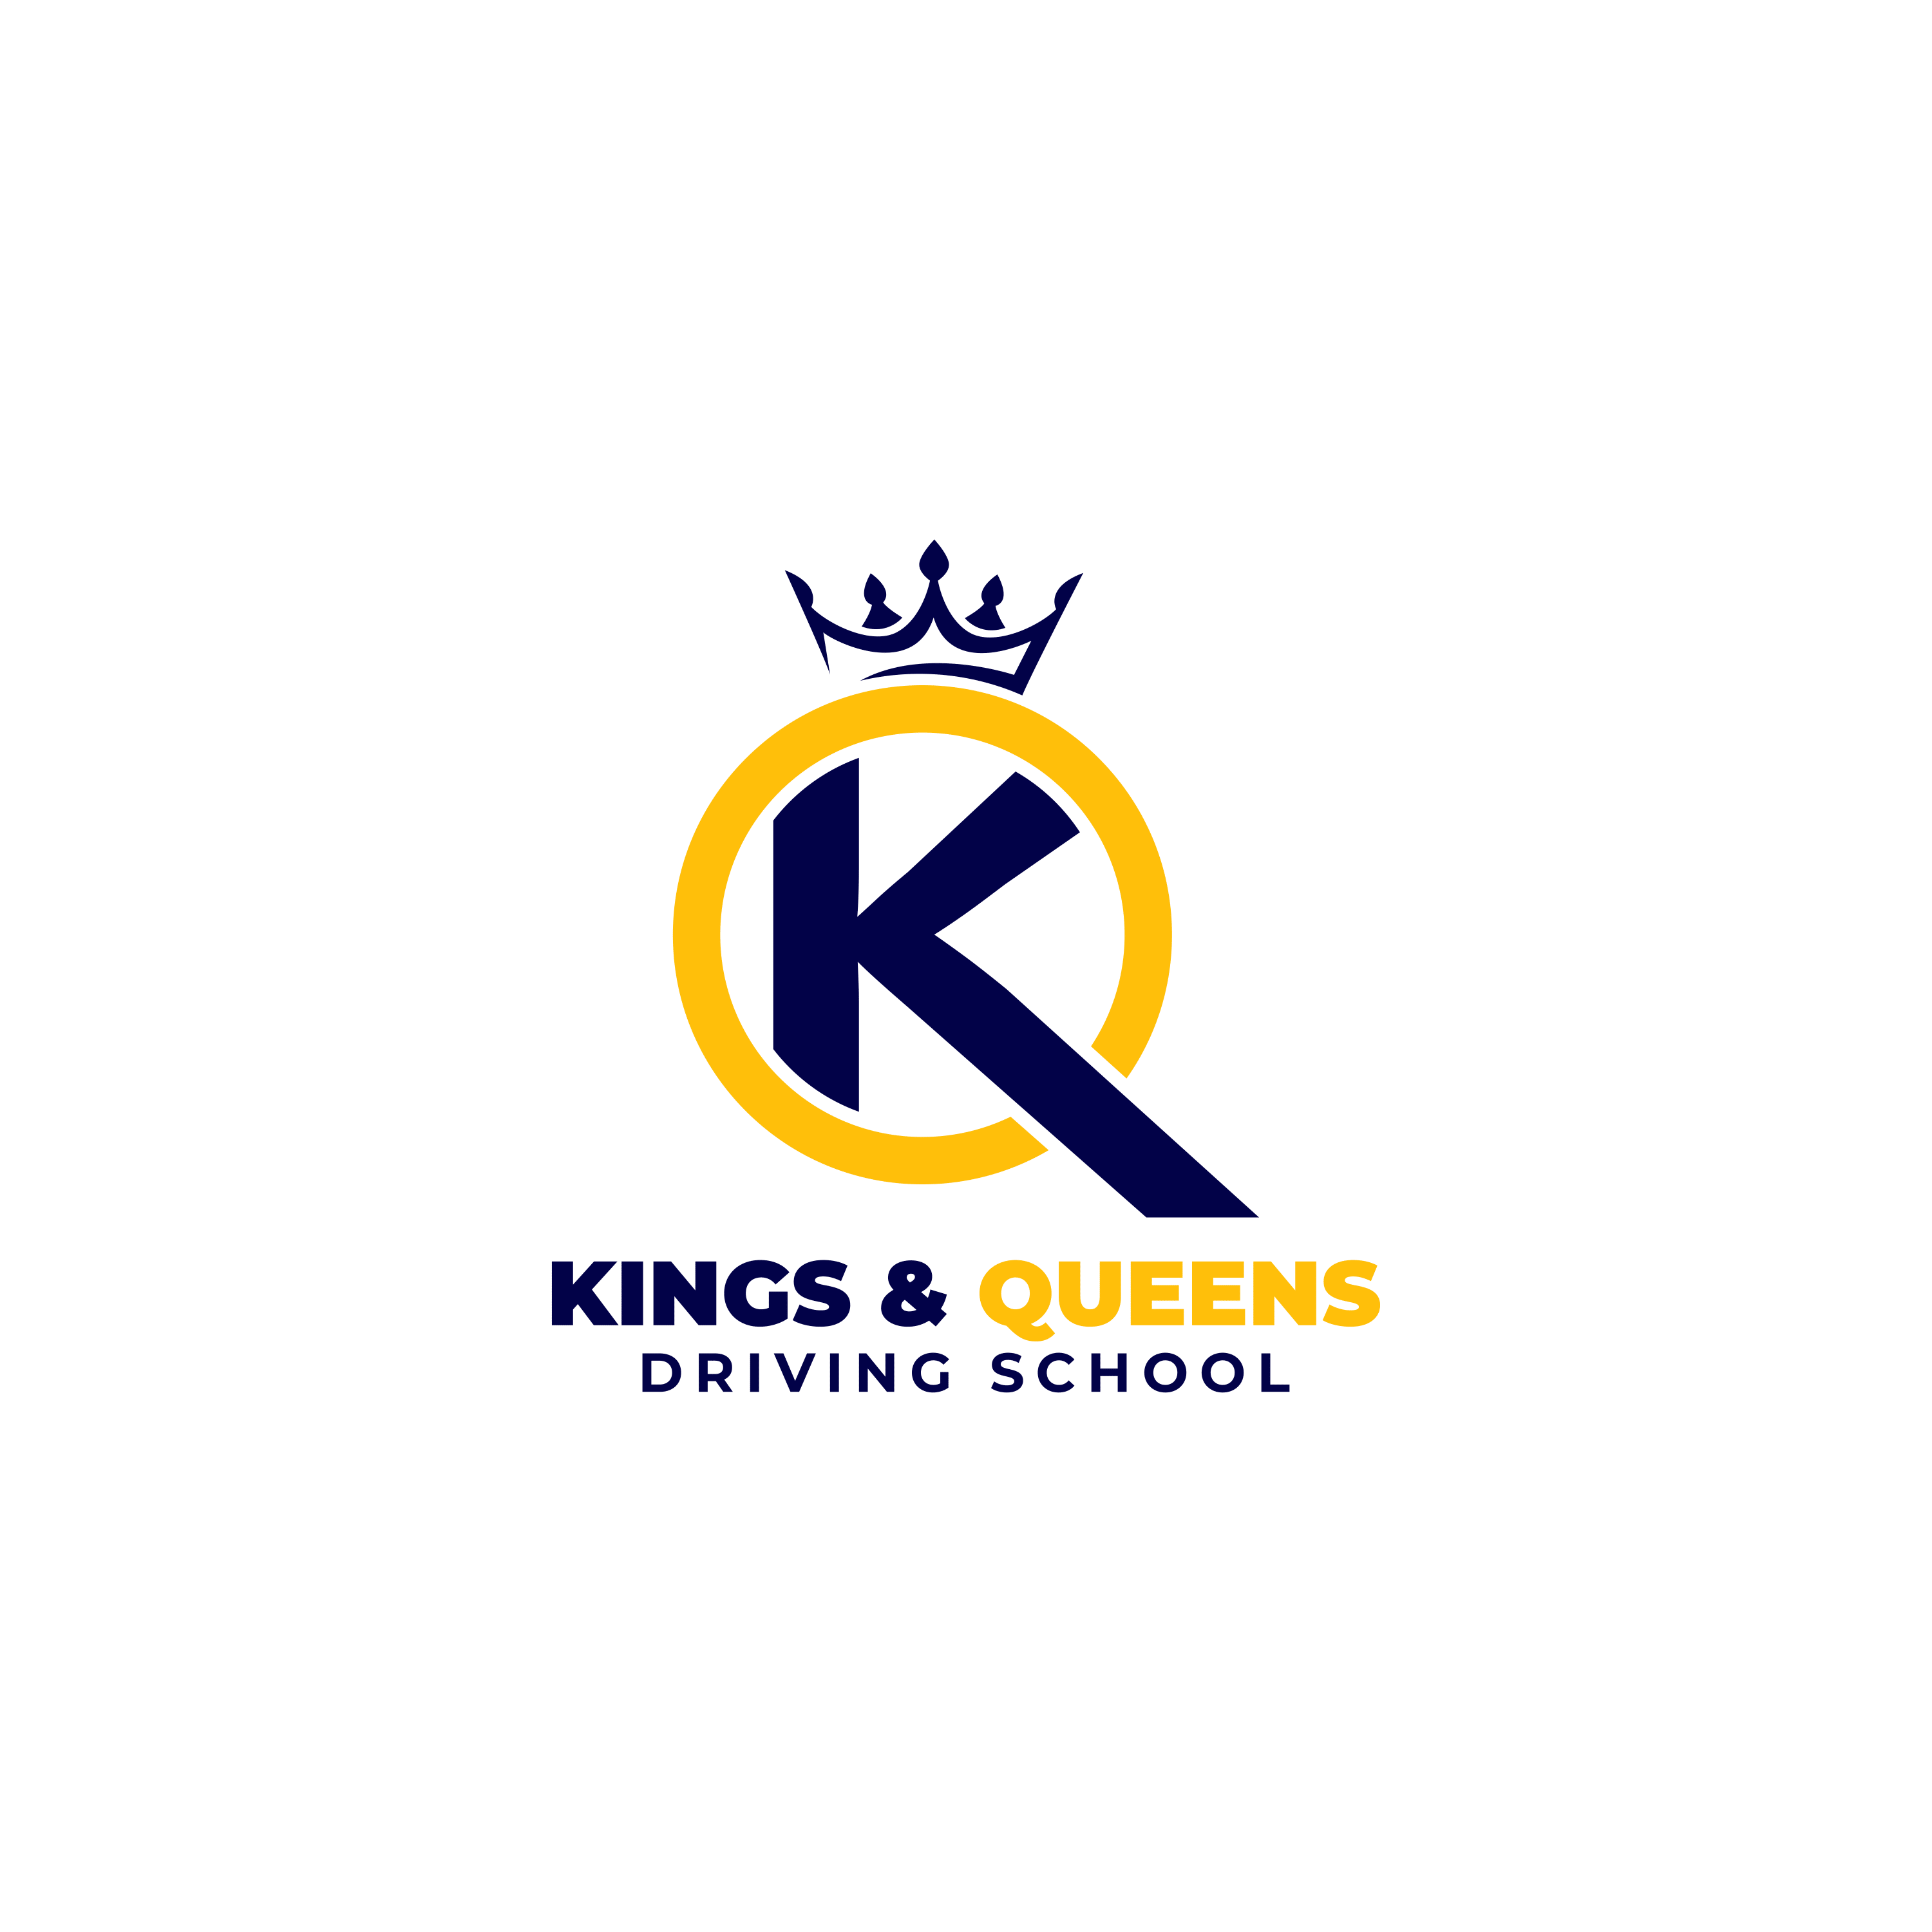 Kings & Queens Driving School